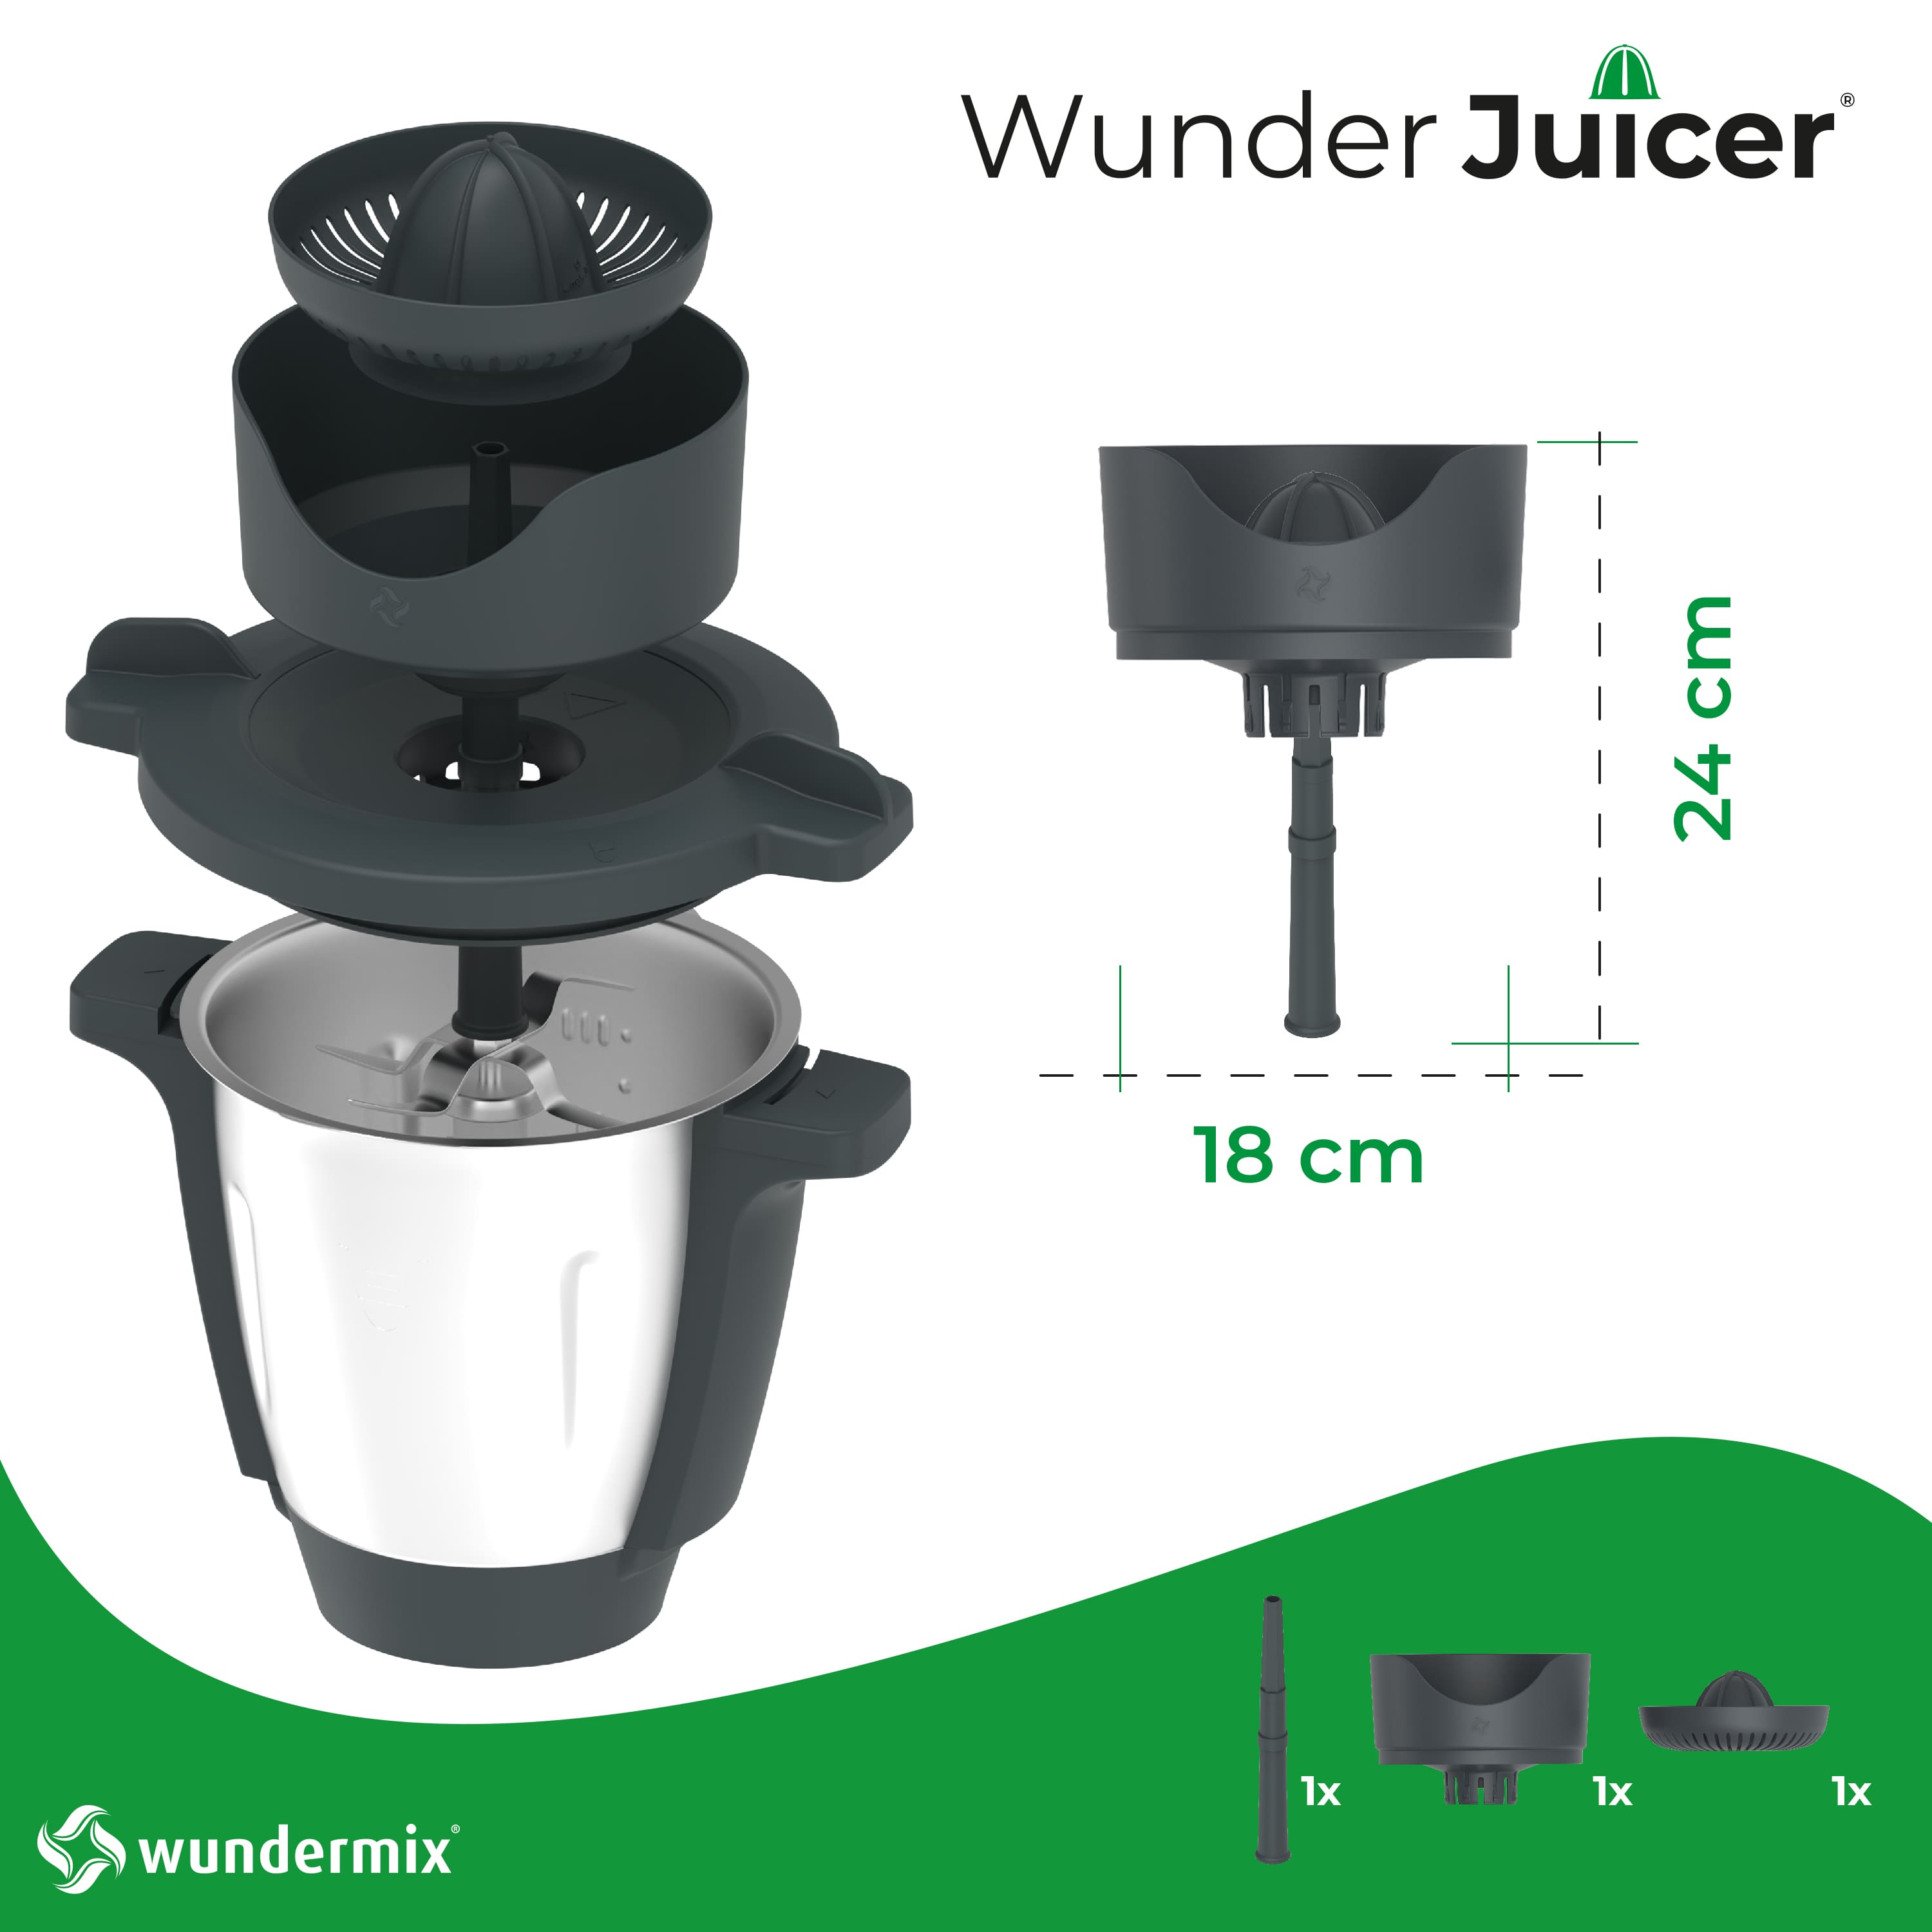 WunderJuicer ® Saftpresse für Monsieur Cuisine Smart, Connect, Trend